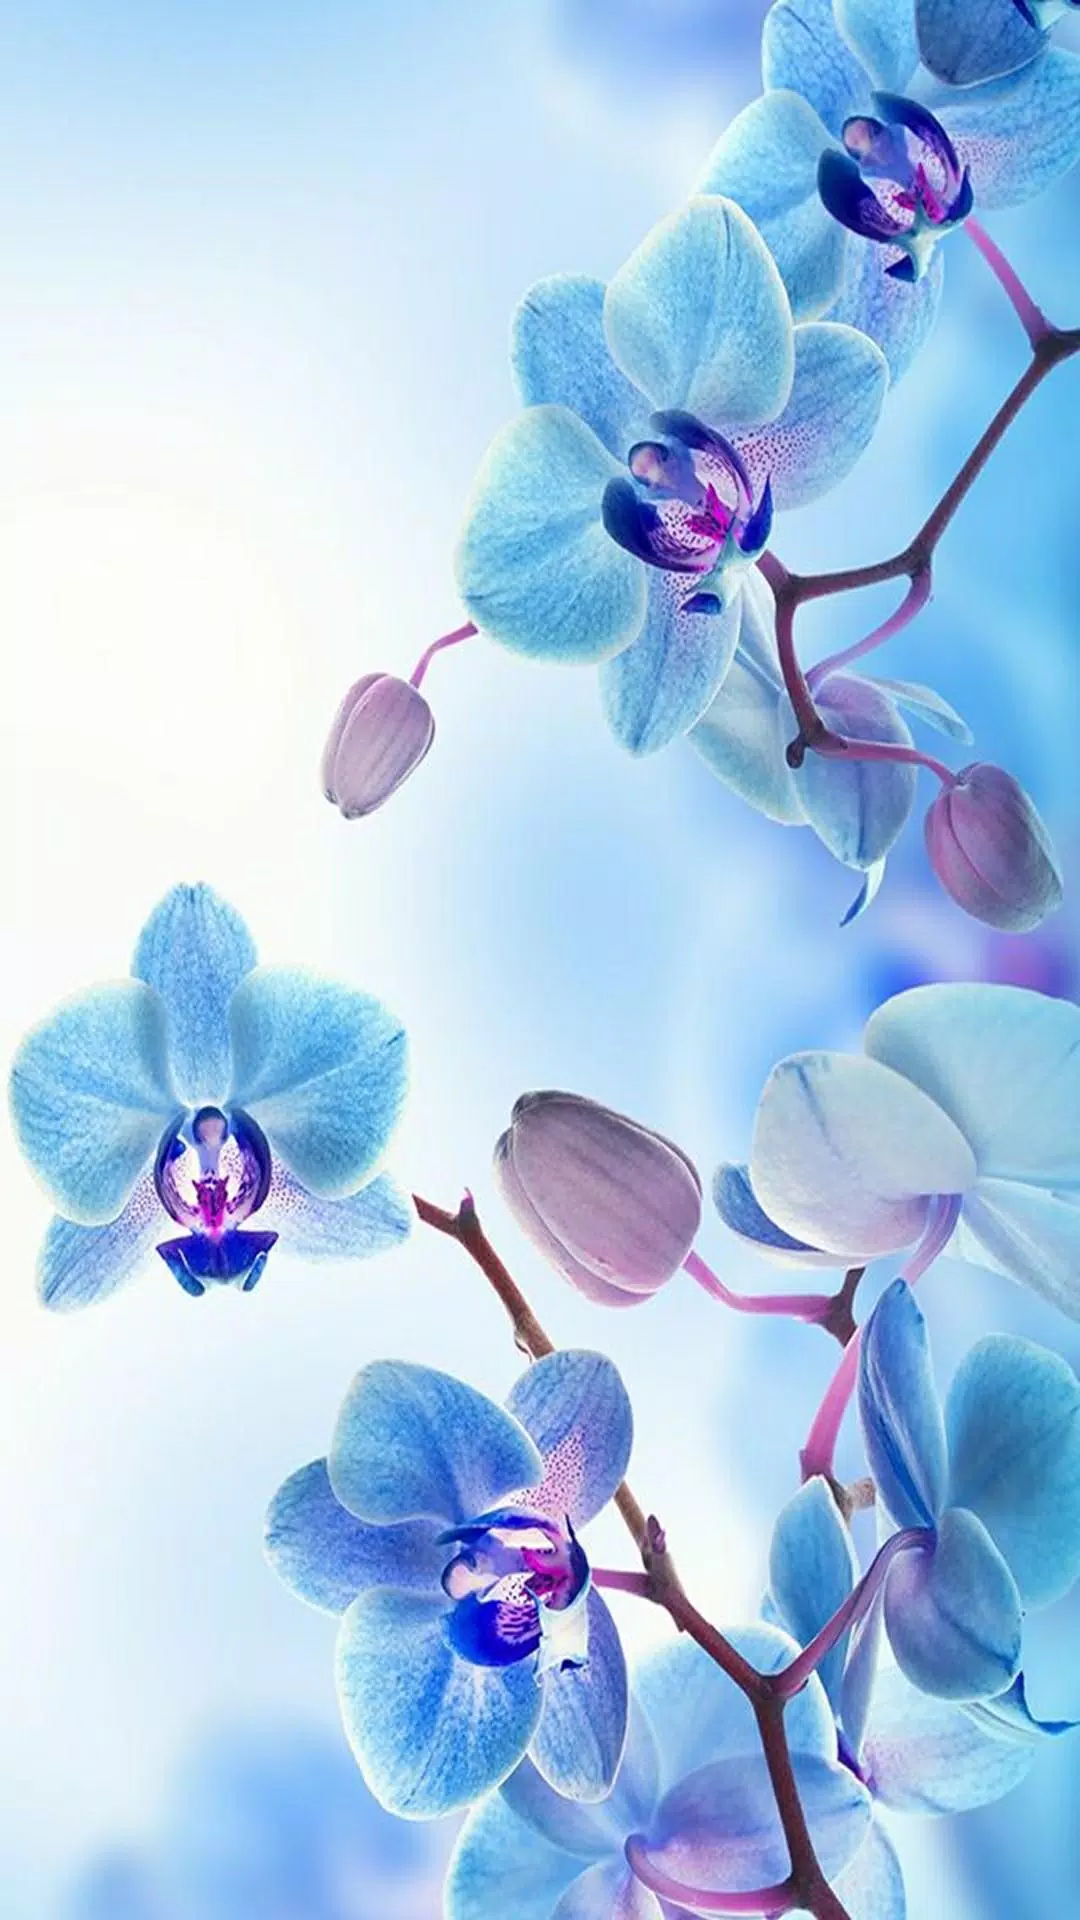 APK hình nền hoa phong lan cho Android là một sự lựa chọn tuyệt vời để giúp bạn tận hưởng vẻ đẹp và sự tươi mới của hoa phong lan trên điện thoại của mình. Với một loạt hình nền hoa phong lan độc đáo, bạn sẽ không bao giờ cảm thấy chán với không gian màn hình điện thoại của mình.